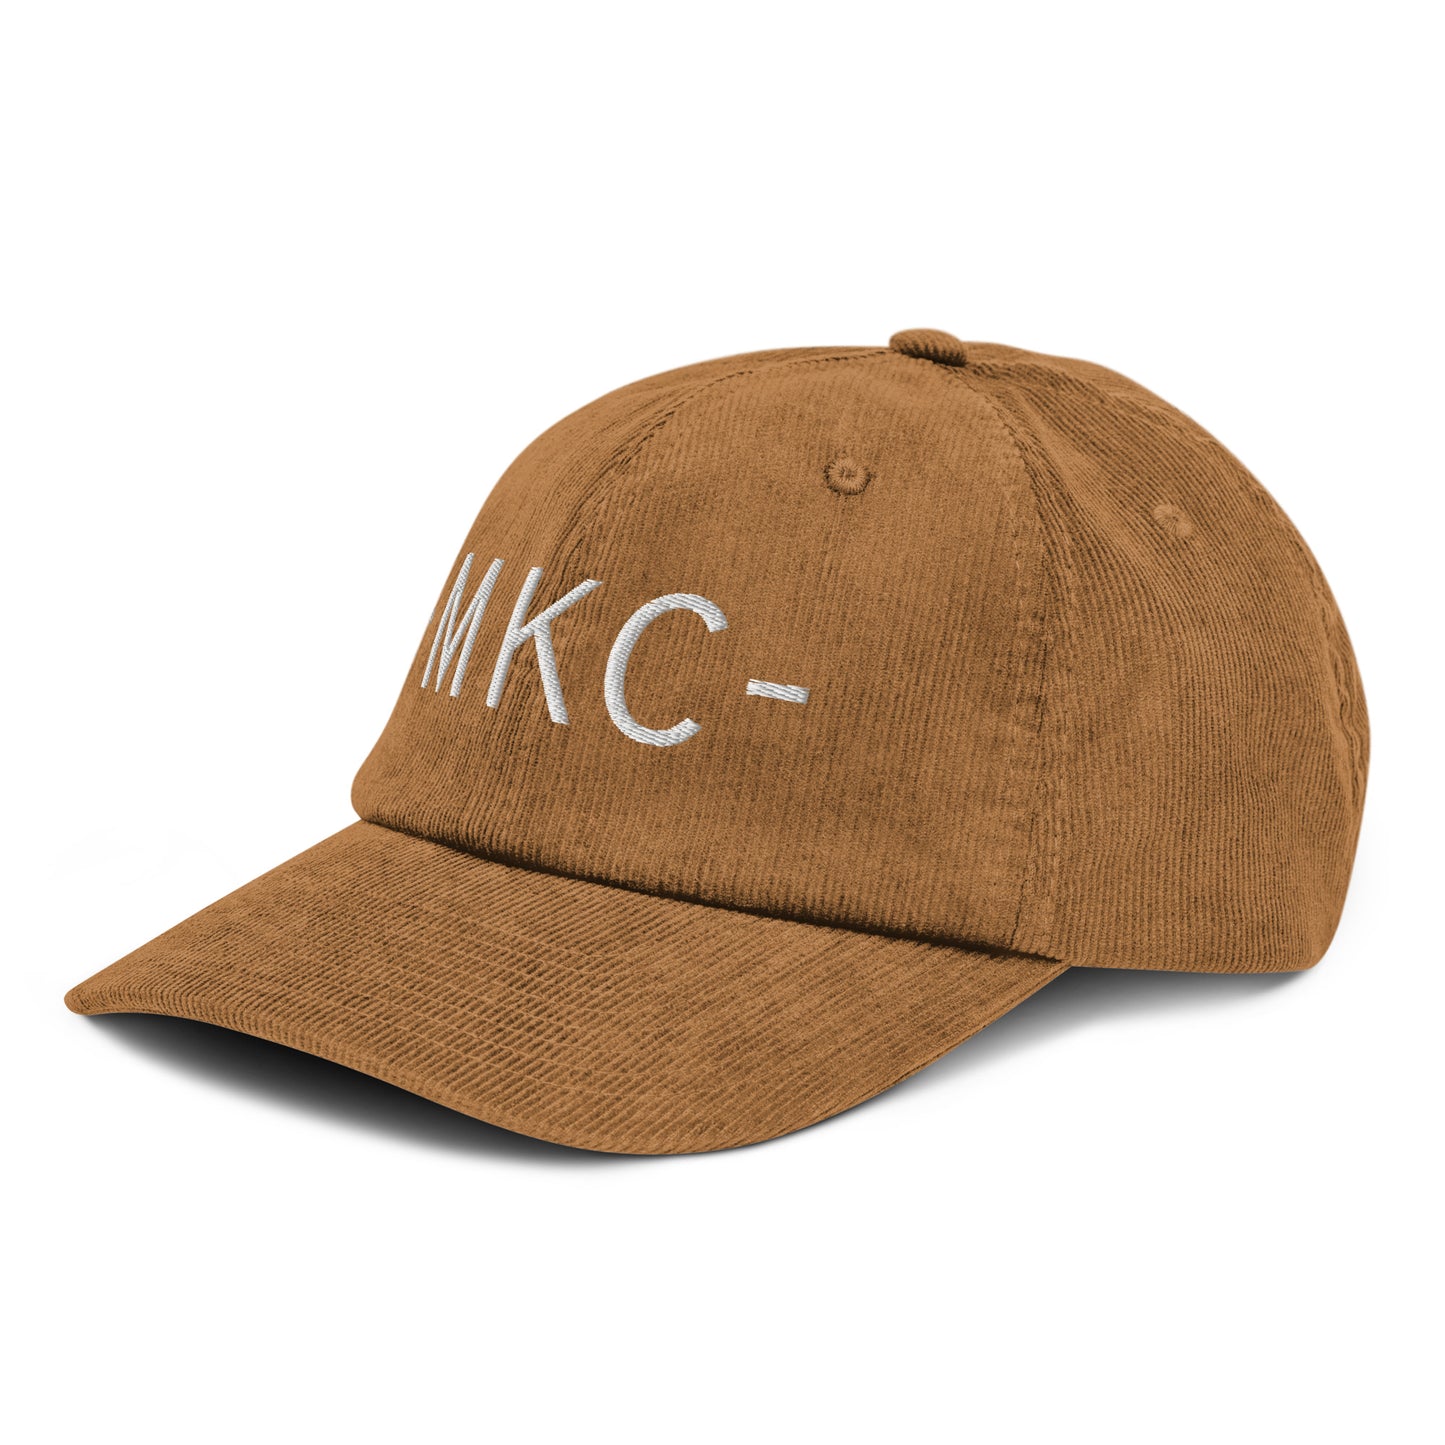 Souvenir Corduroy Hat - White • MKC Kansas City • YHM Designs - Image 19